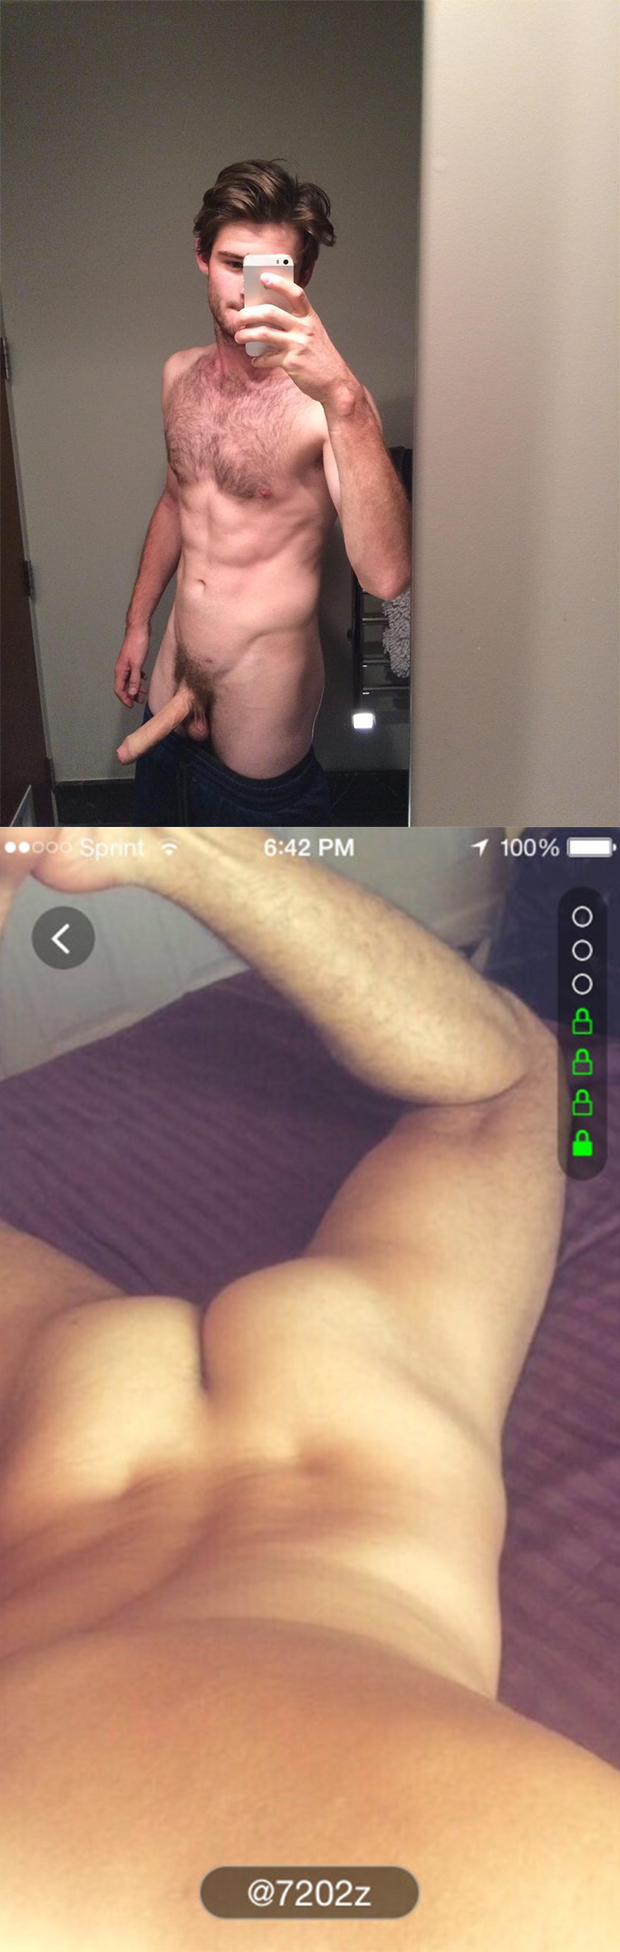 straight guy nude selfie